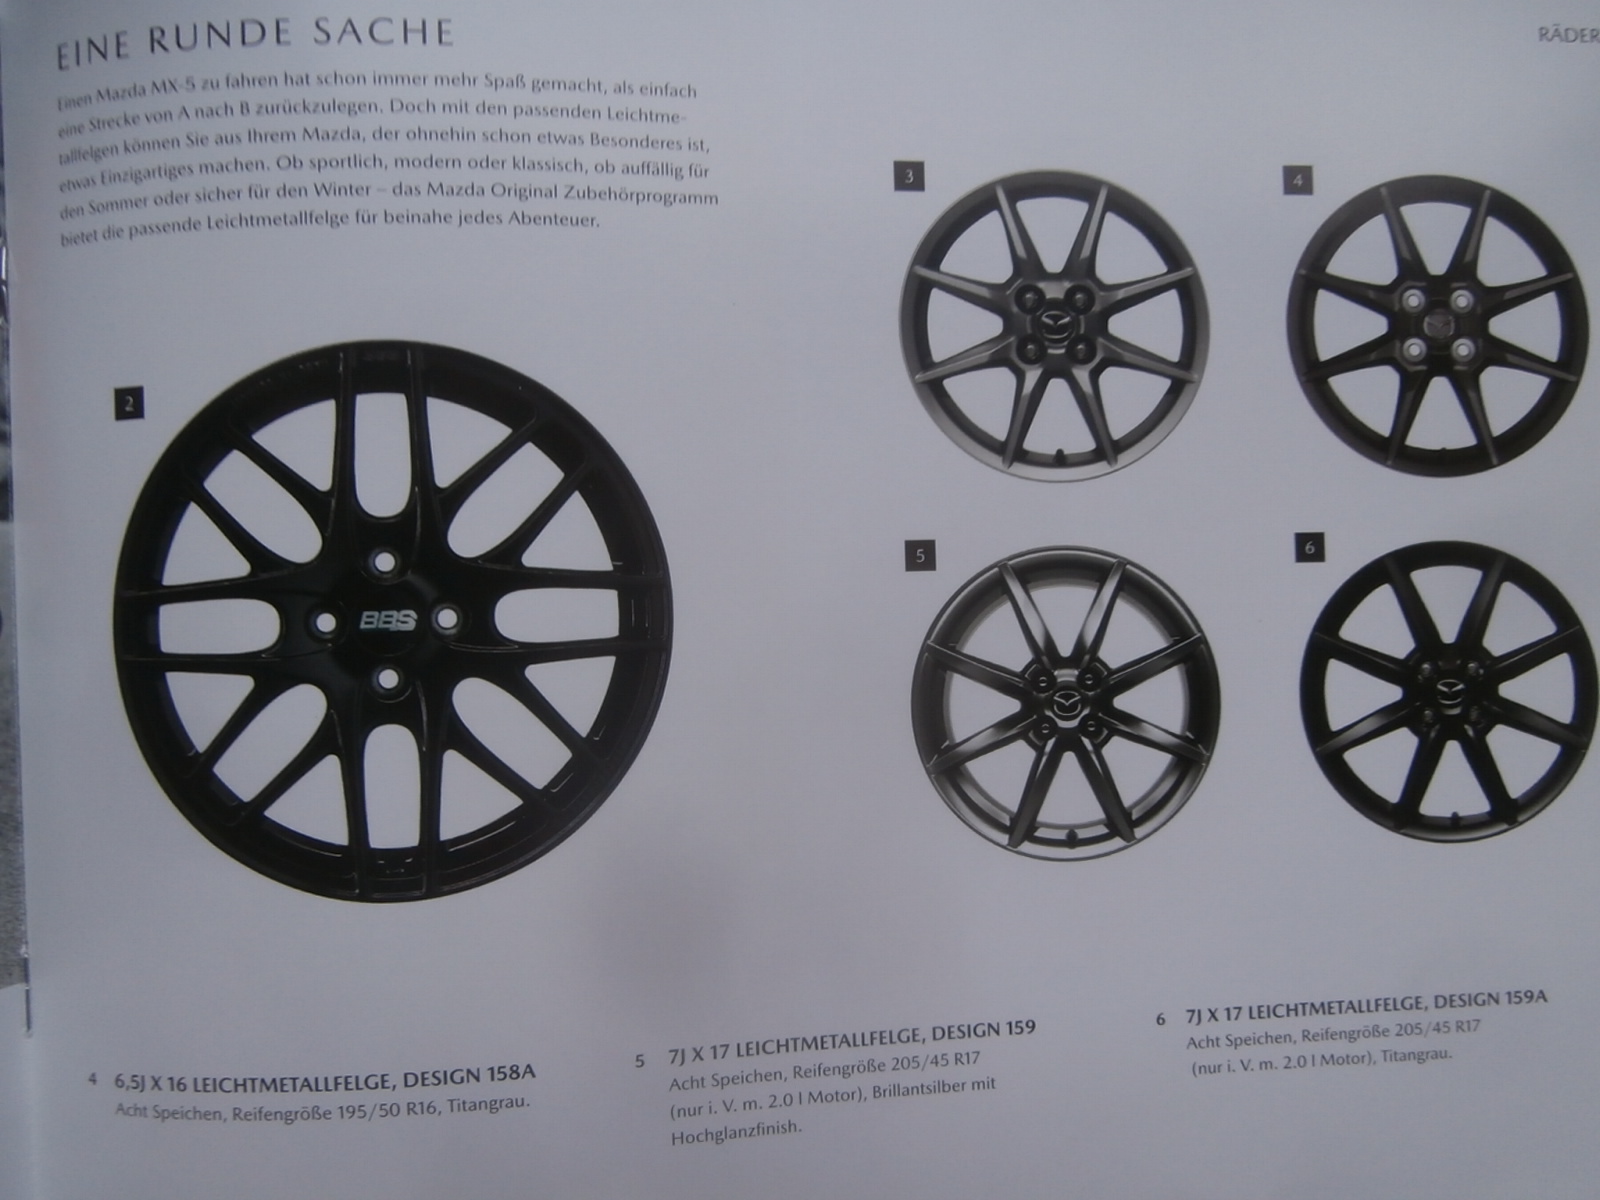 Druckausgabe Mazda MX-5 Typ ND Zubehör Katalog im April 2019 :  Autoliteratur Höpel